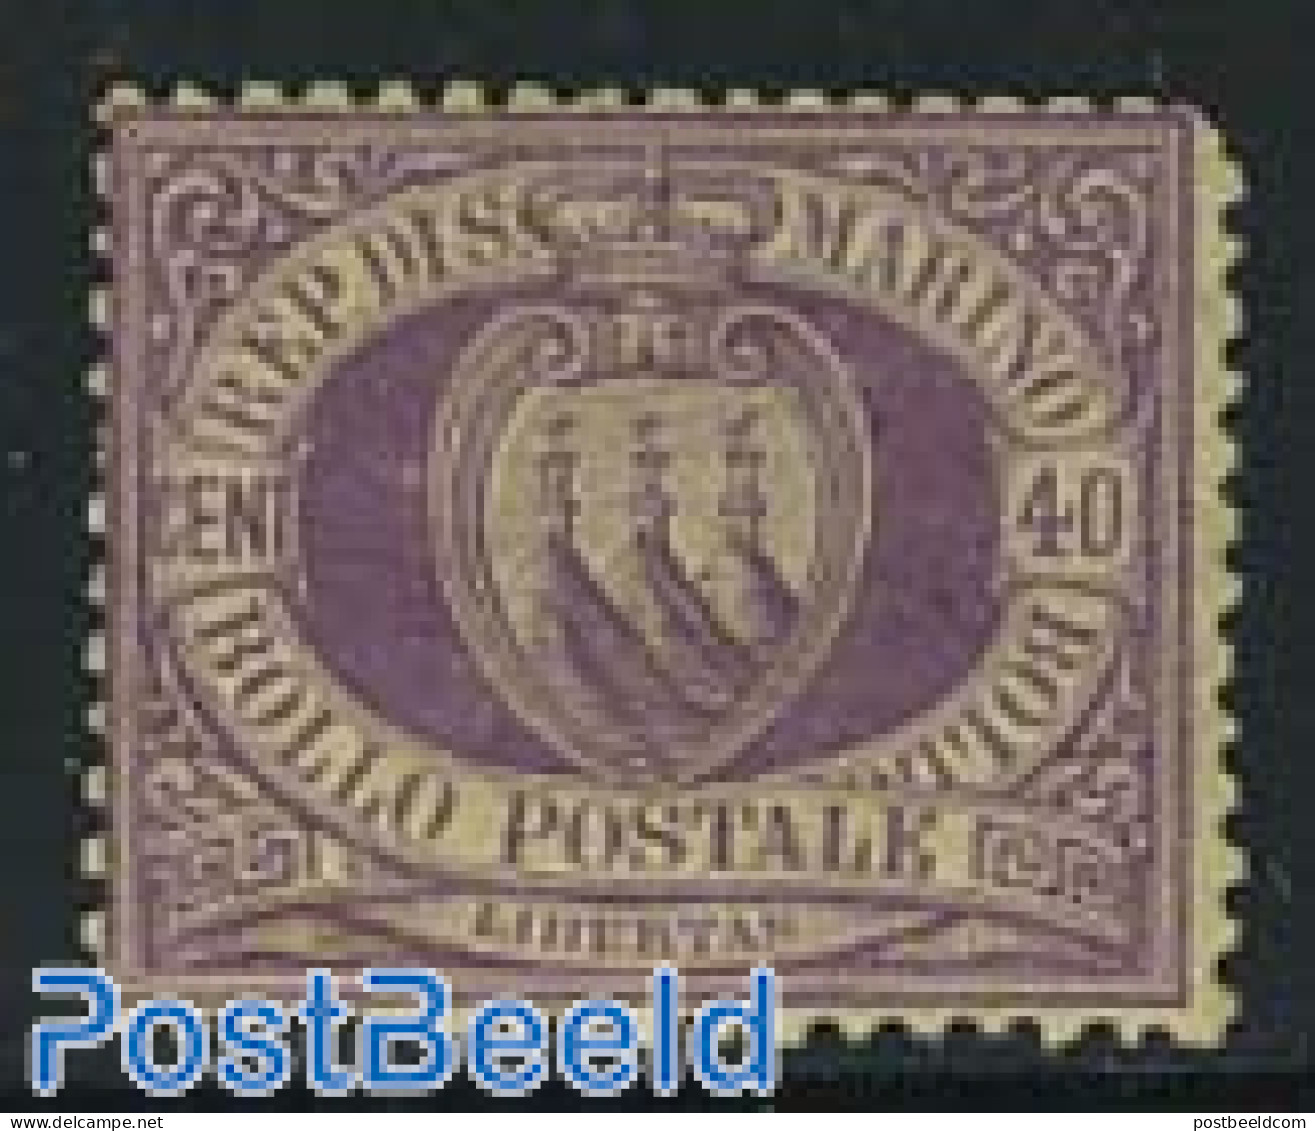 San Marino 1877 40c Purple, Unused Hinged, Short Upper Right Corne, Unused (hinged) - Ongebruikt